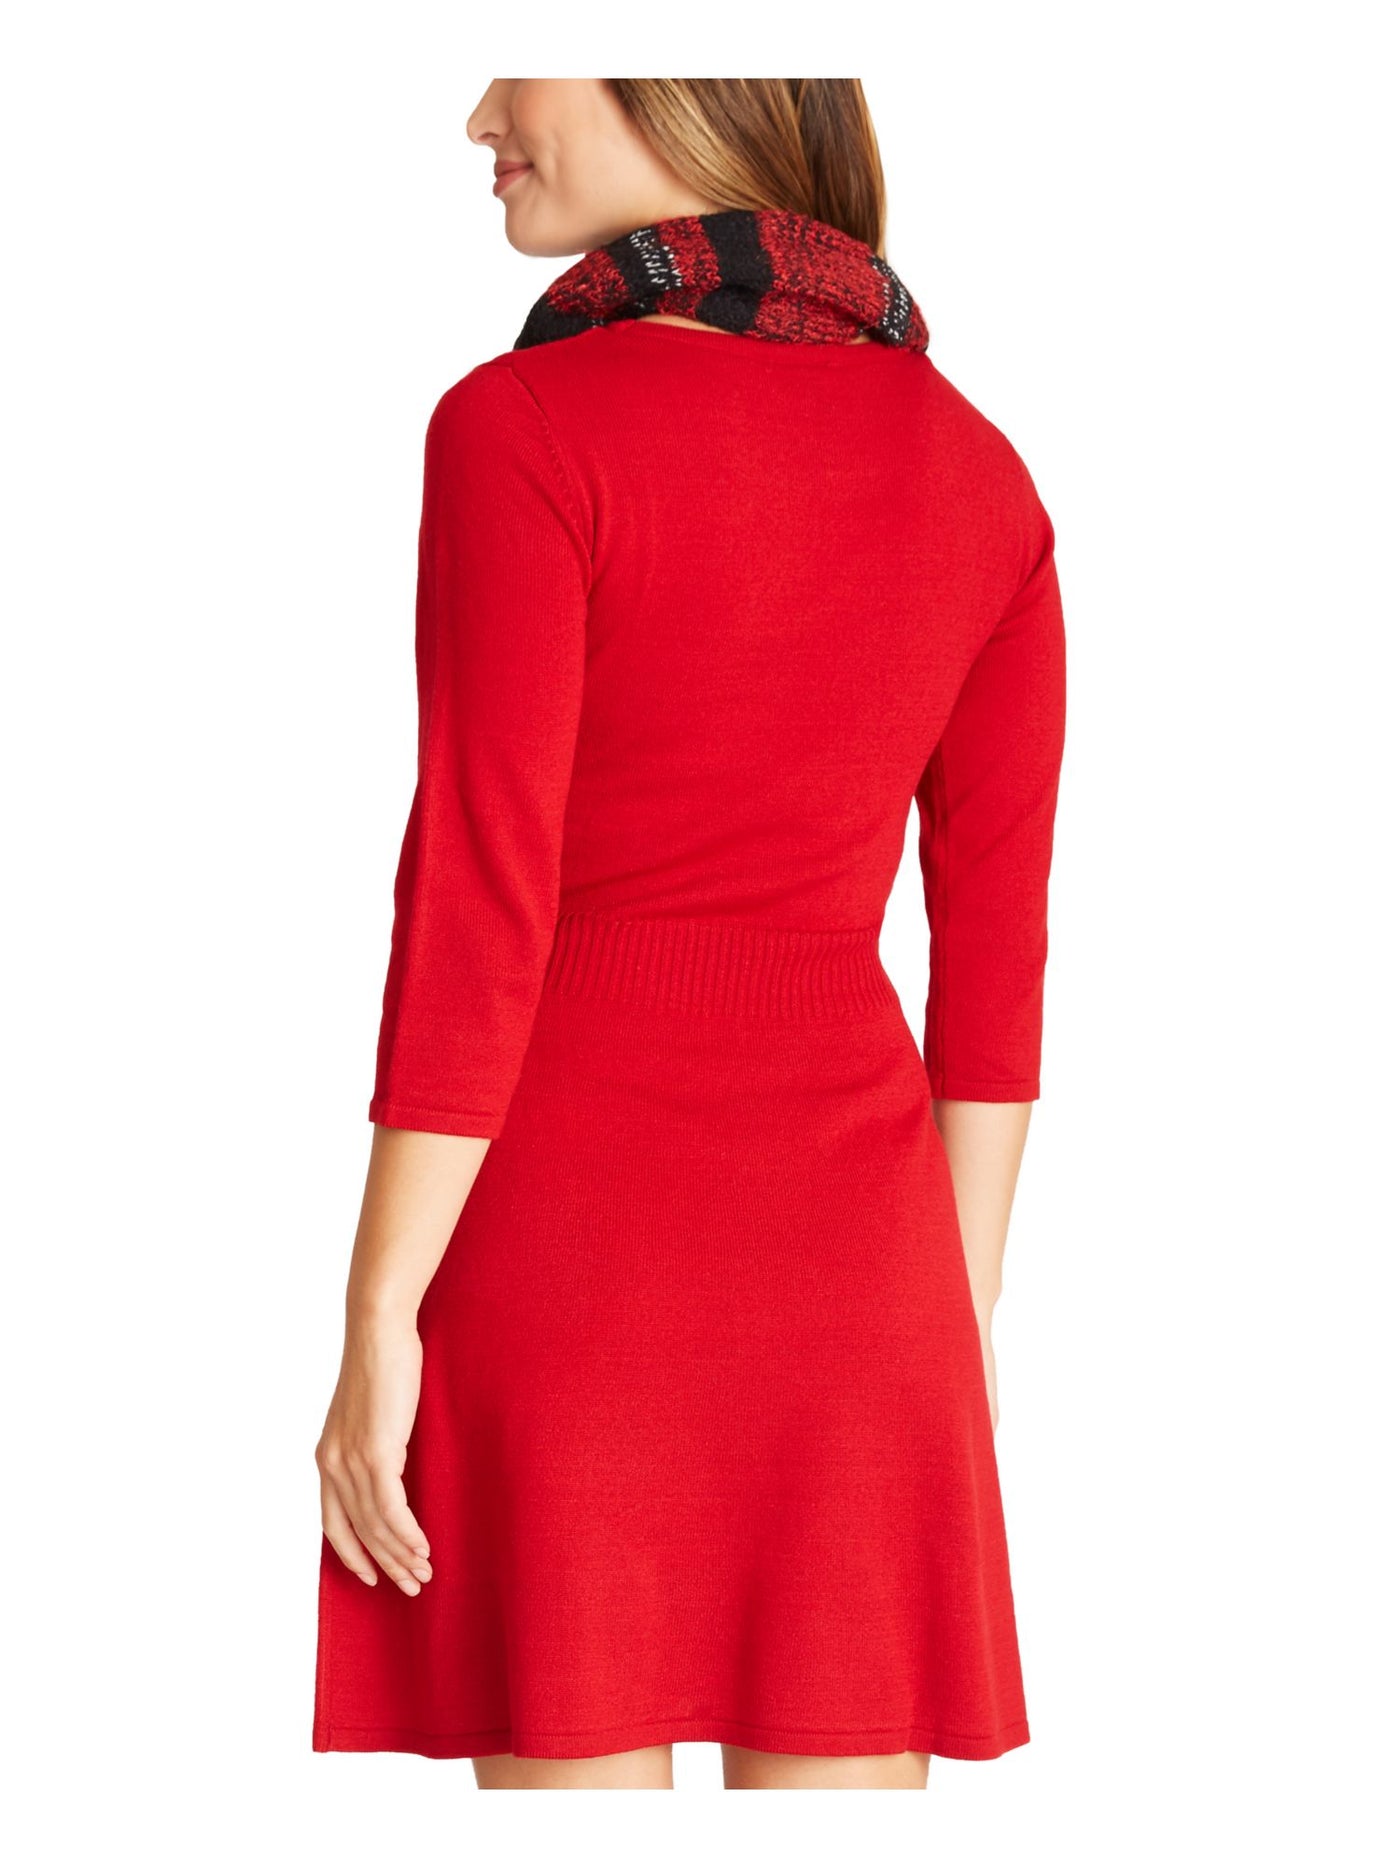 BCX DRESS Womens Red 3/4 Sleeve Mini Fit + Flare Dress Juniors XS